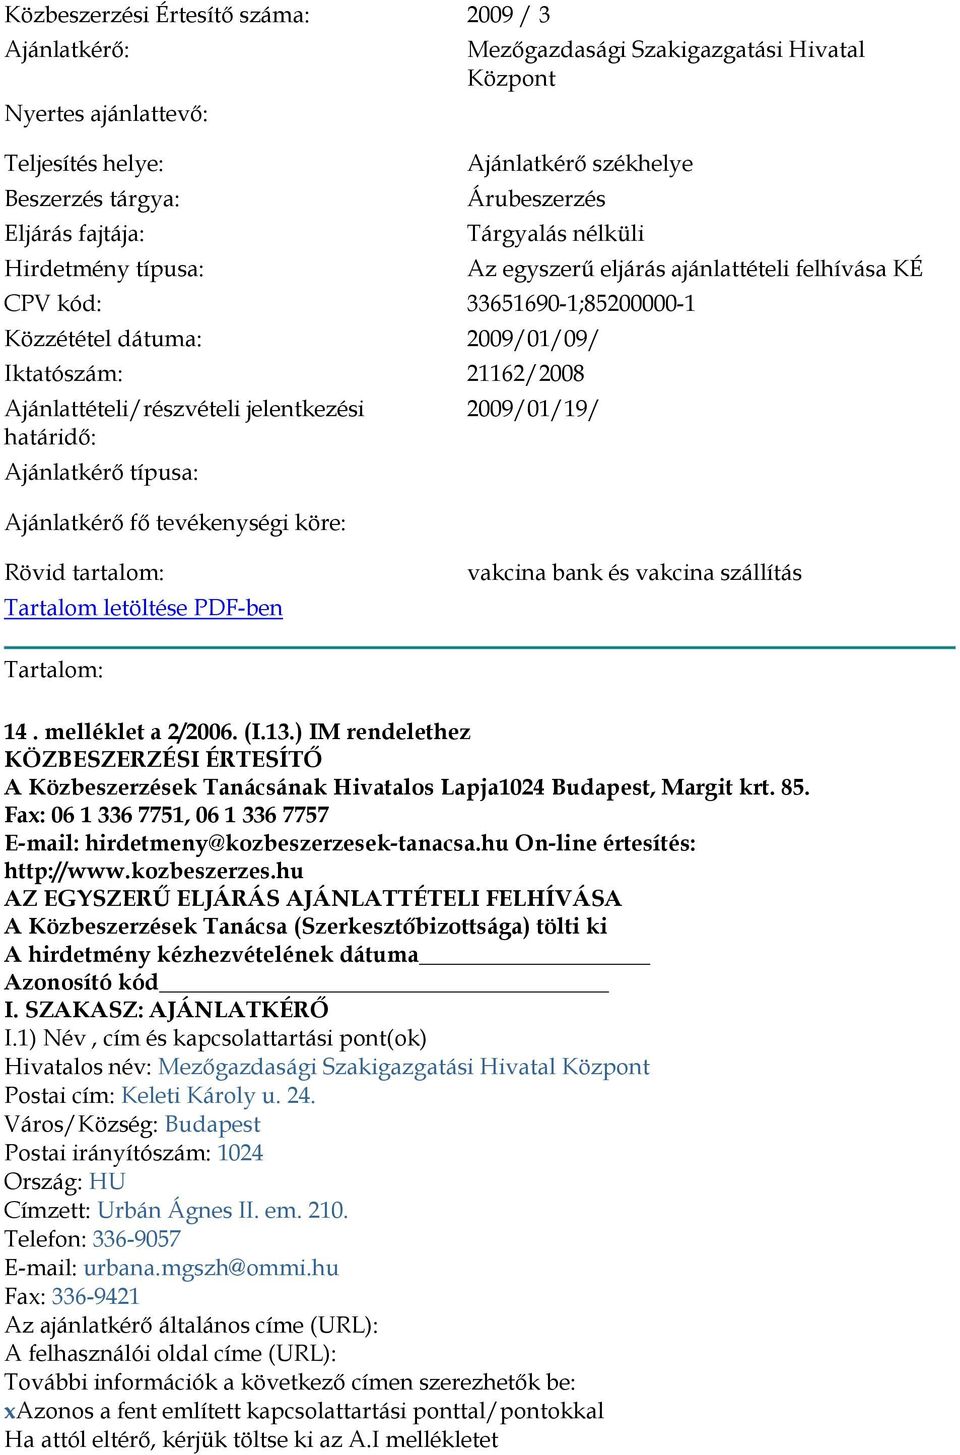 Ajánlattételi/részvételi jelentkezési határidő: Ajánlatkérő típusa: Ajánlatkérő fő tevékenységi köre: 2009/01/19/ Rövid tartalom: Tartalom letöltése PDF-ben vakcina bank és vakcina szállítás